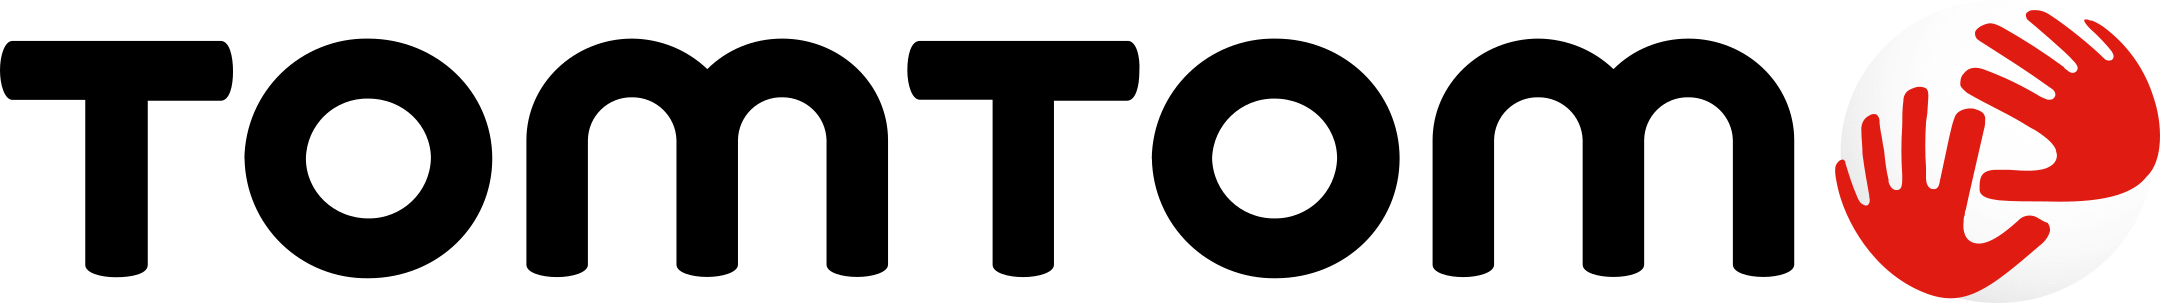 tomtom logo 1 - TomTom Logo